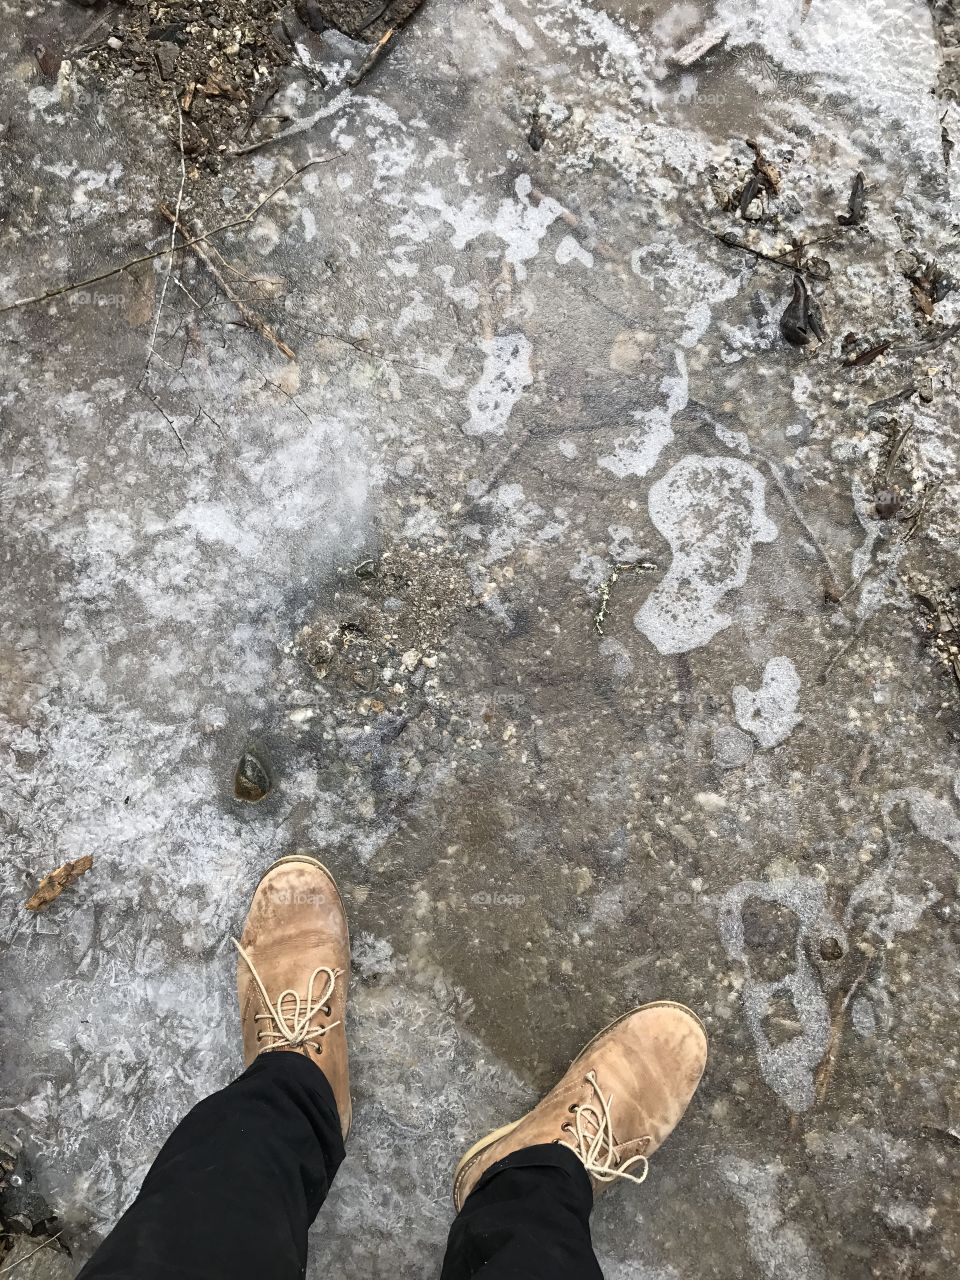 Iced Lake 